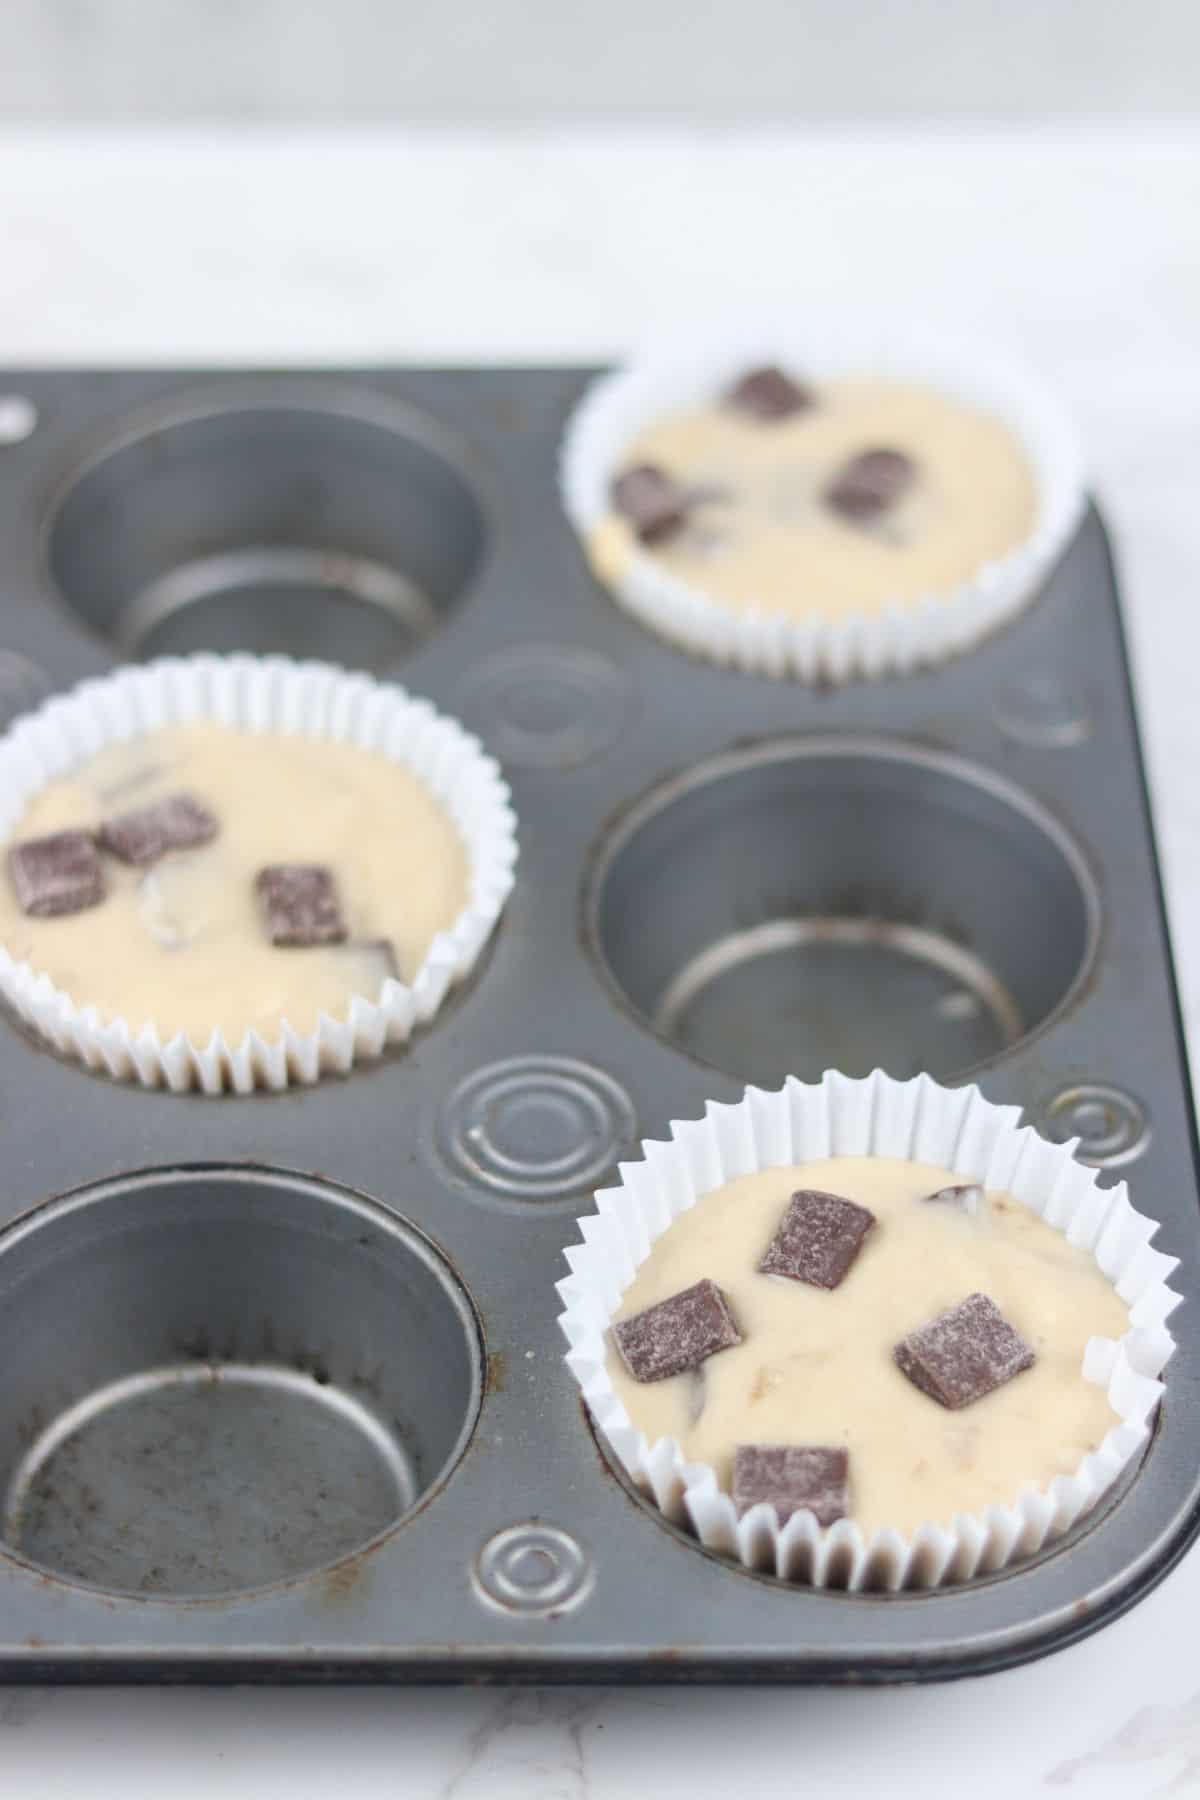 bakery style banana muffin batter in muffin pan